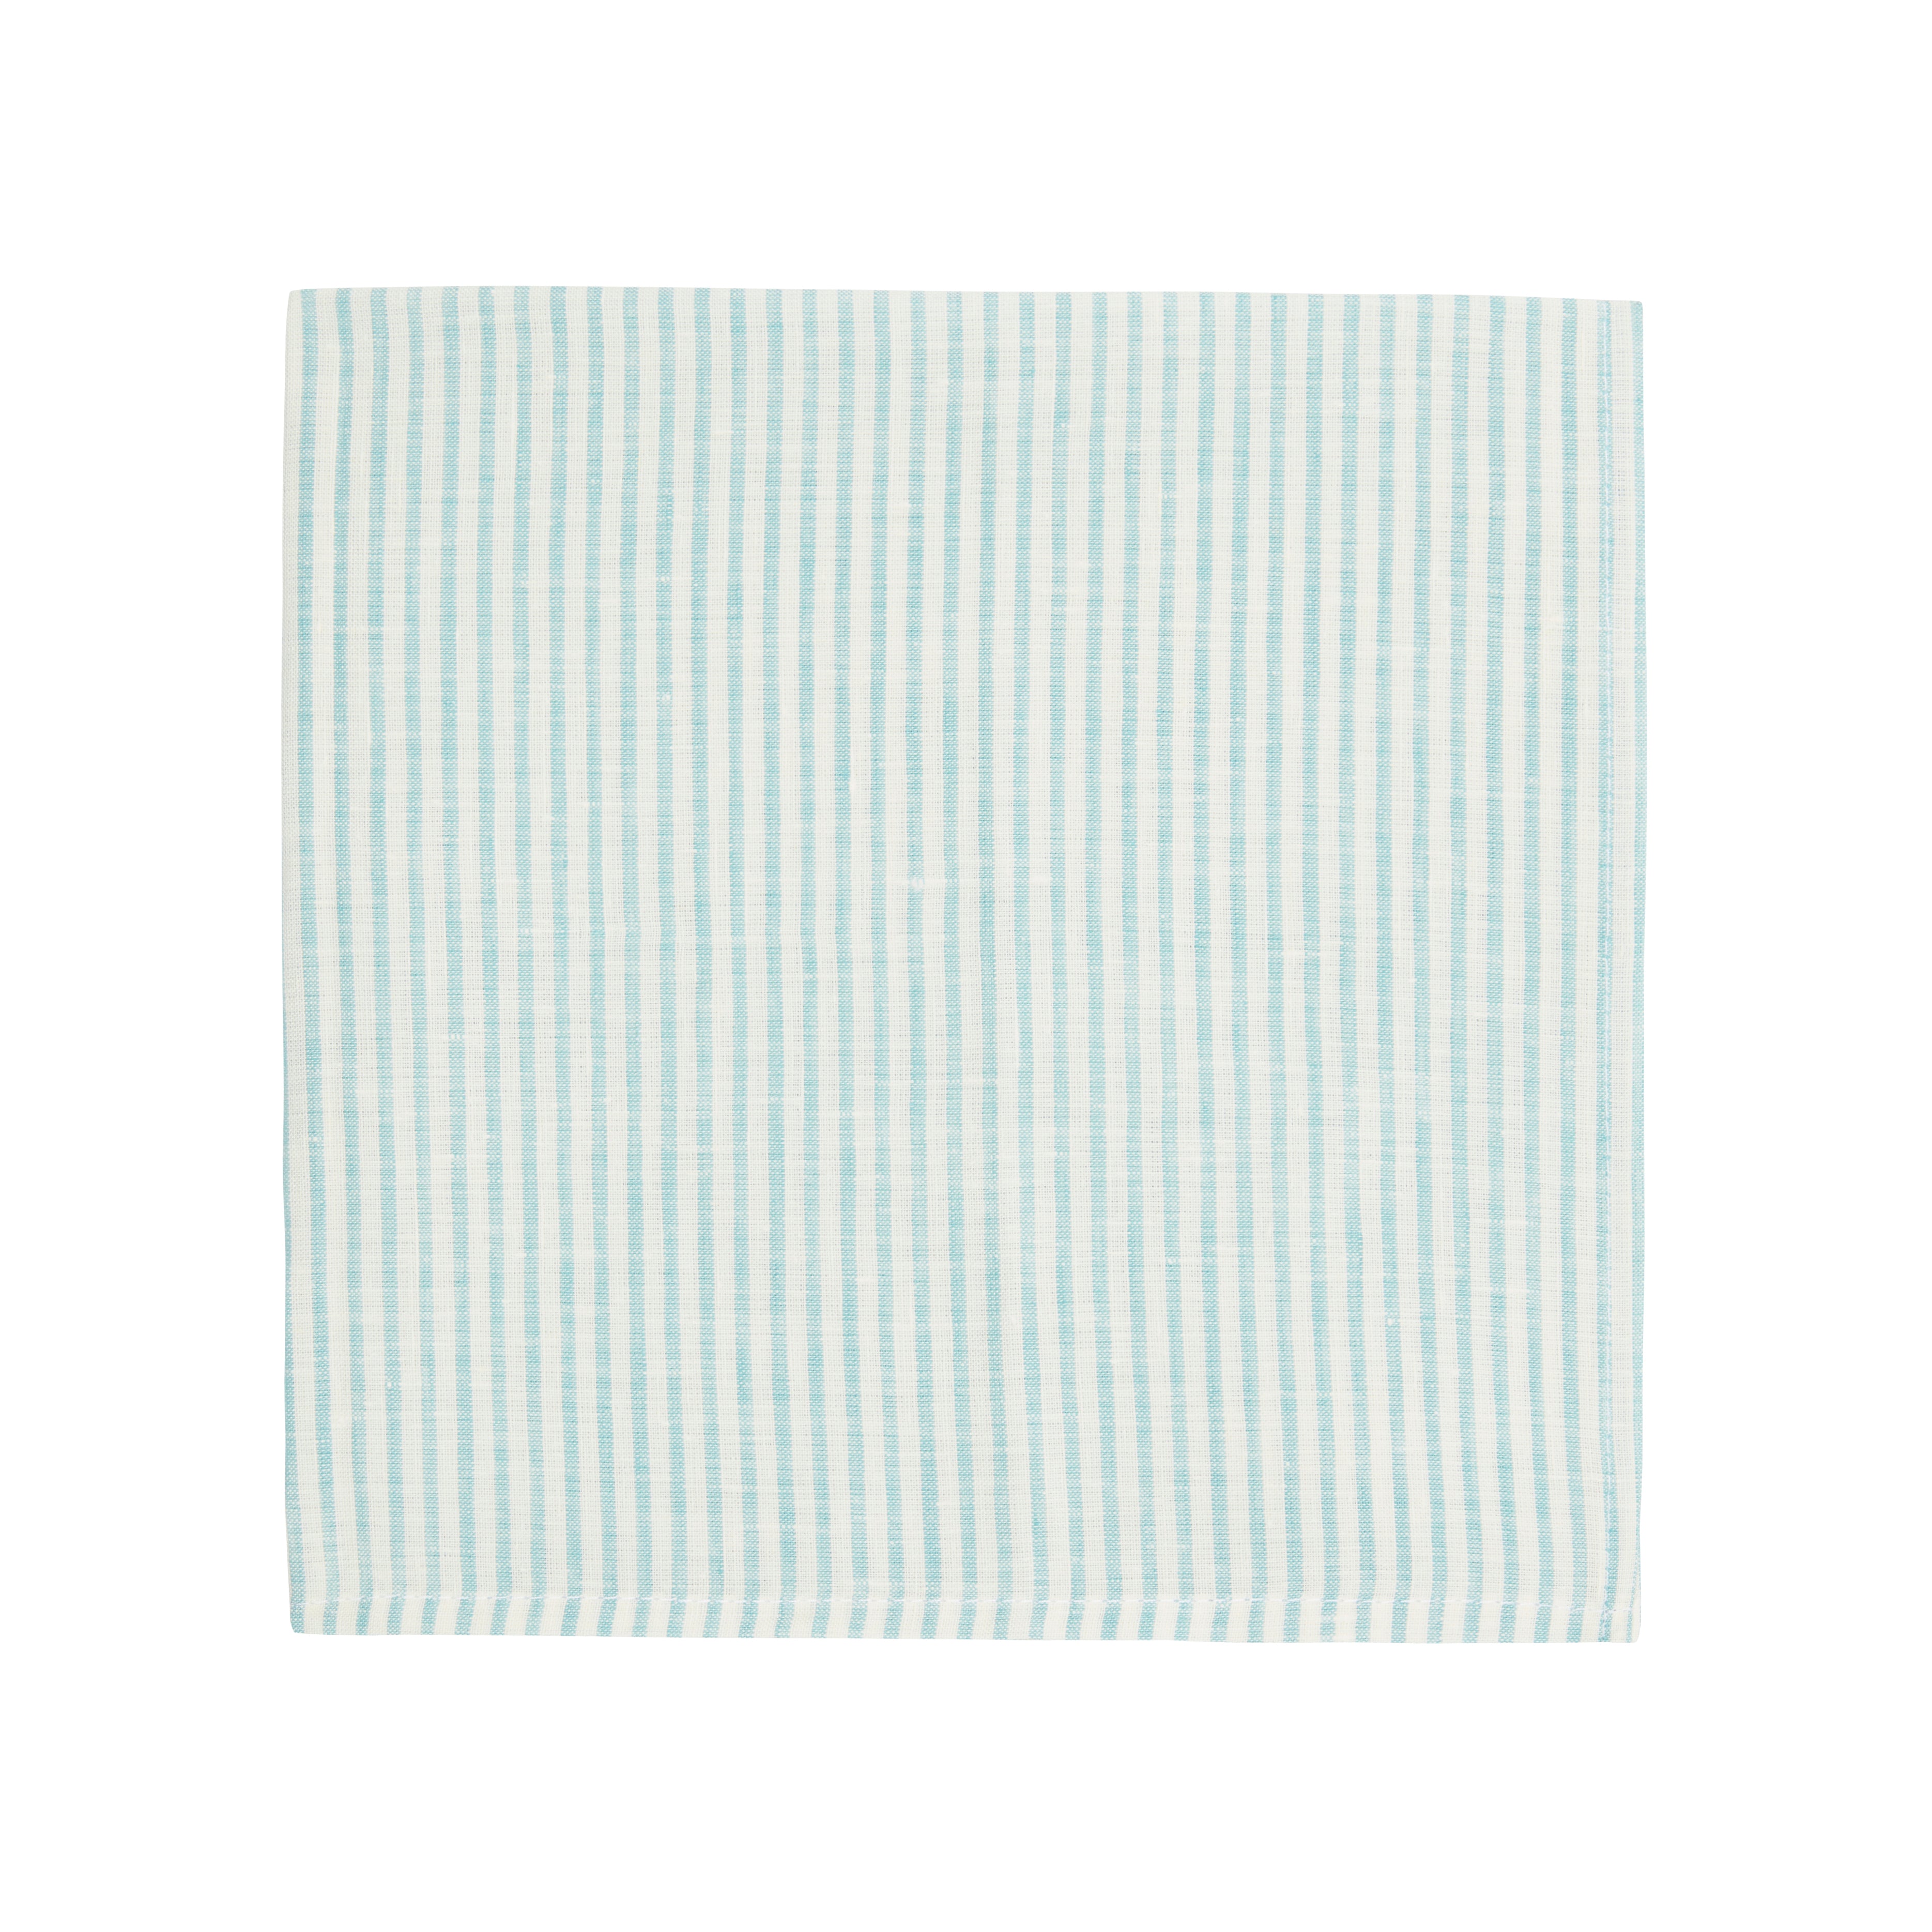 Napkin Stripe 54cm x 54cm - Aqua and White